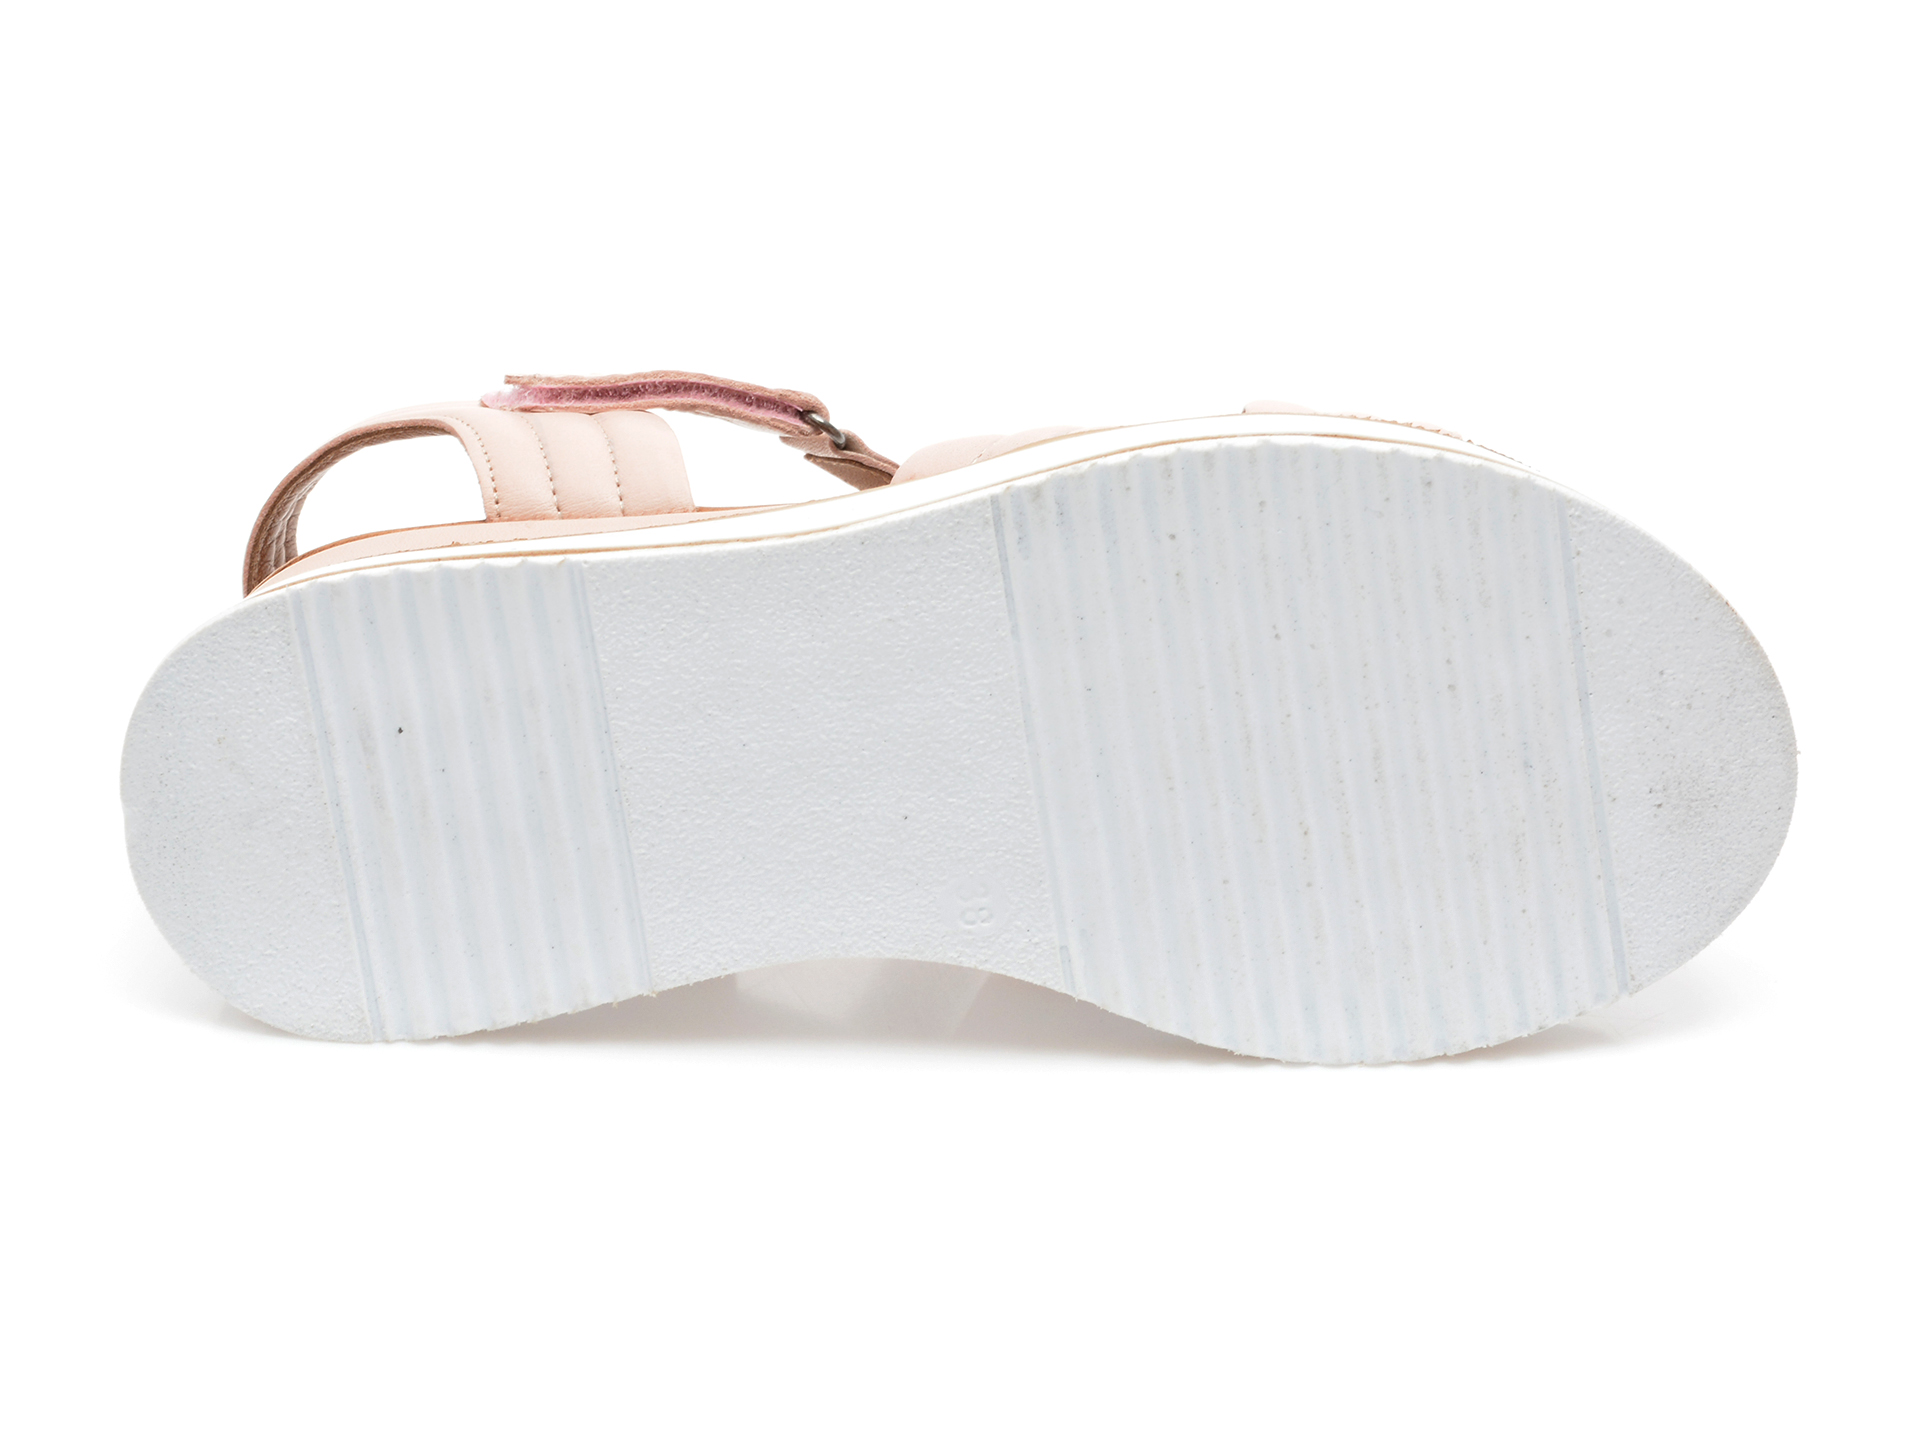 Comandă Încălțăminte Damă, la Reducere  Sandale ANNA LUCCI nude, 1200, din piele naturala Branduri de top ✓